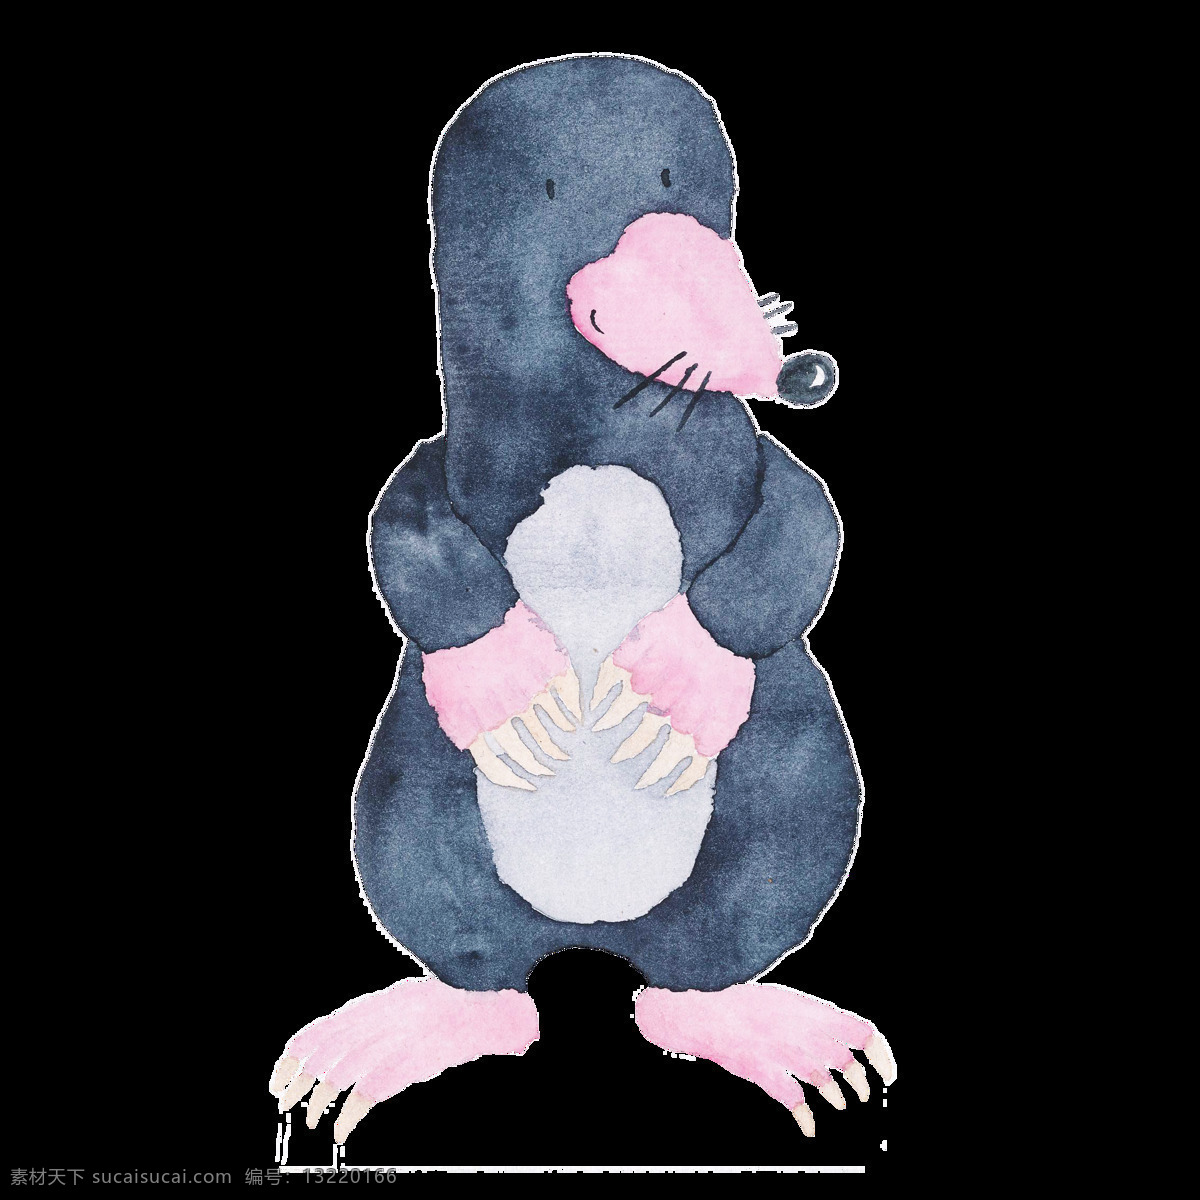 黑色 水彩 可爱 手绘 小 动物 鼠 透明素材 免扣素材 装饰图案